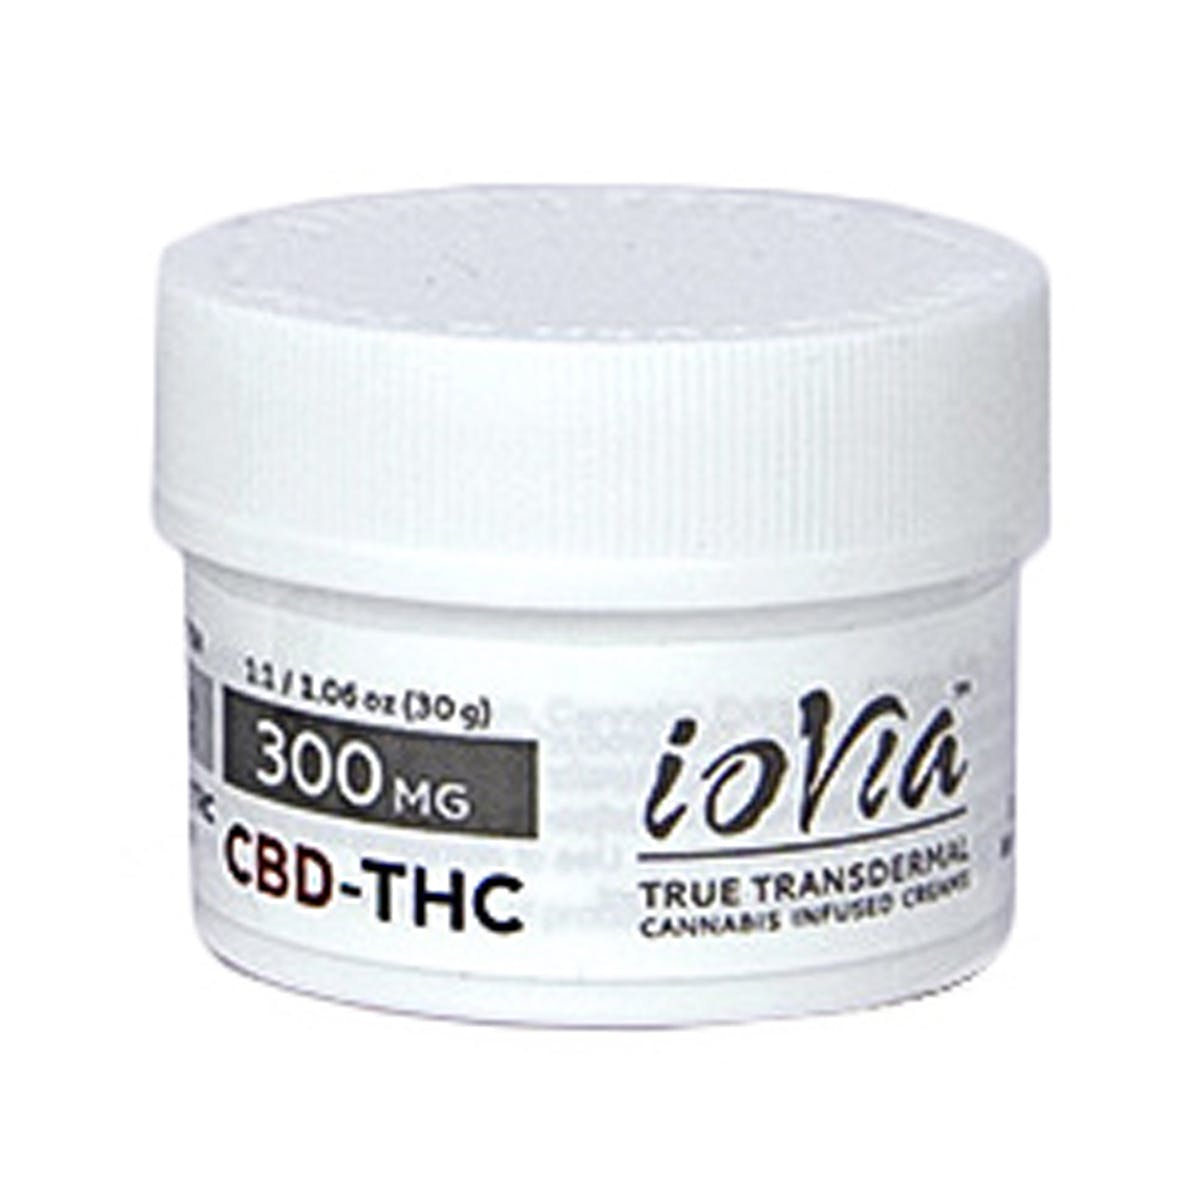 (Med) ioVia Transdermal - 300mg CBD-THC